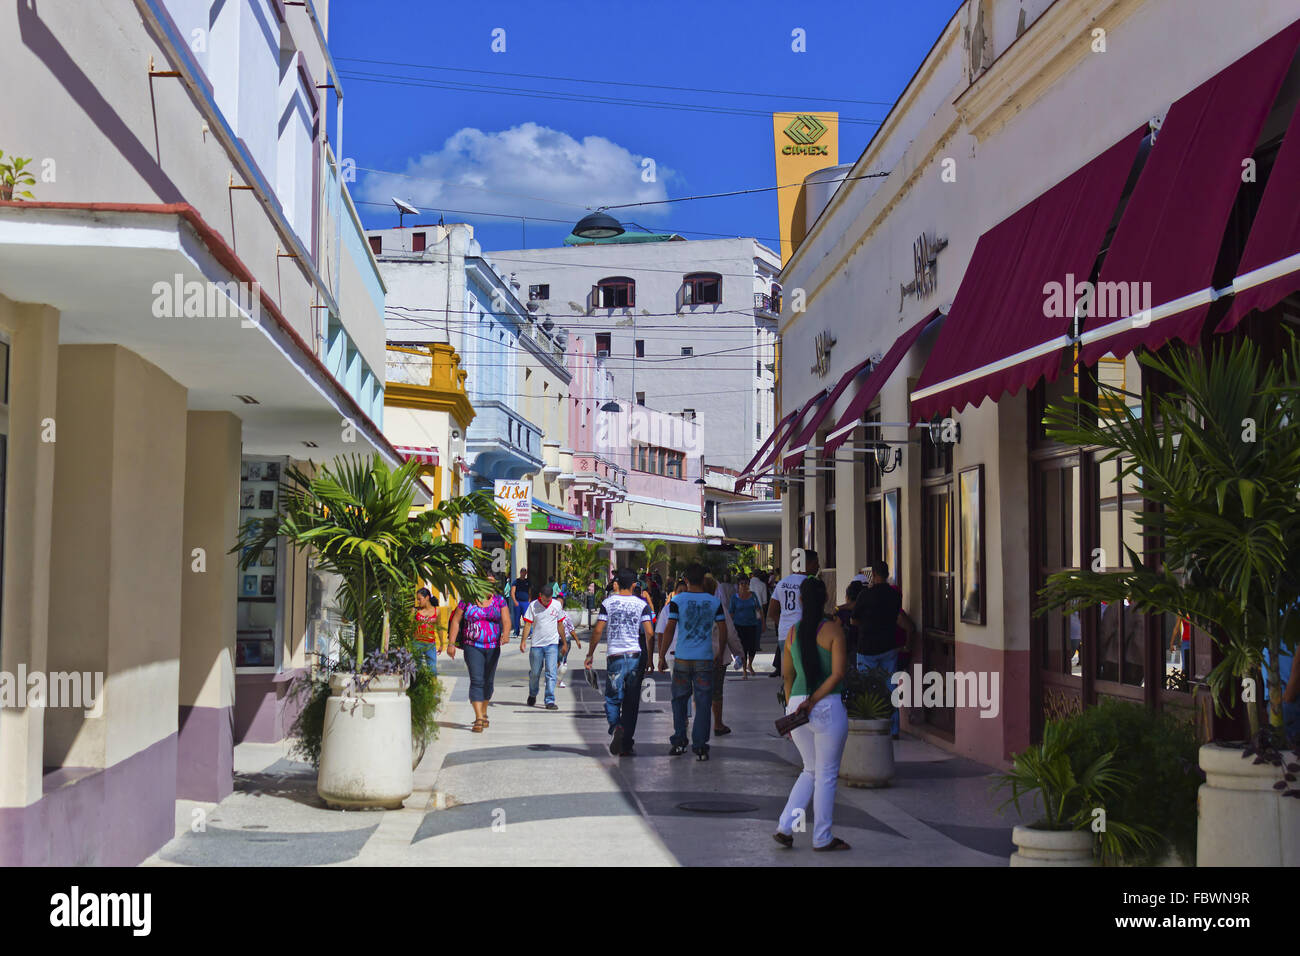 Shopping Precinct in Camaguey, Cuba Stock Photo